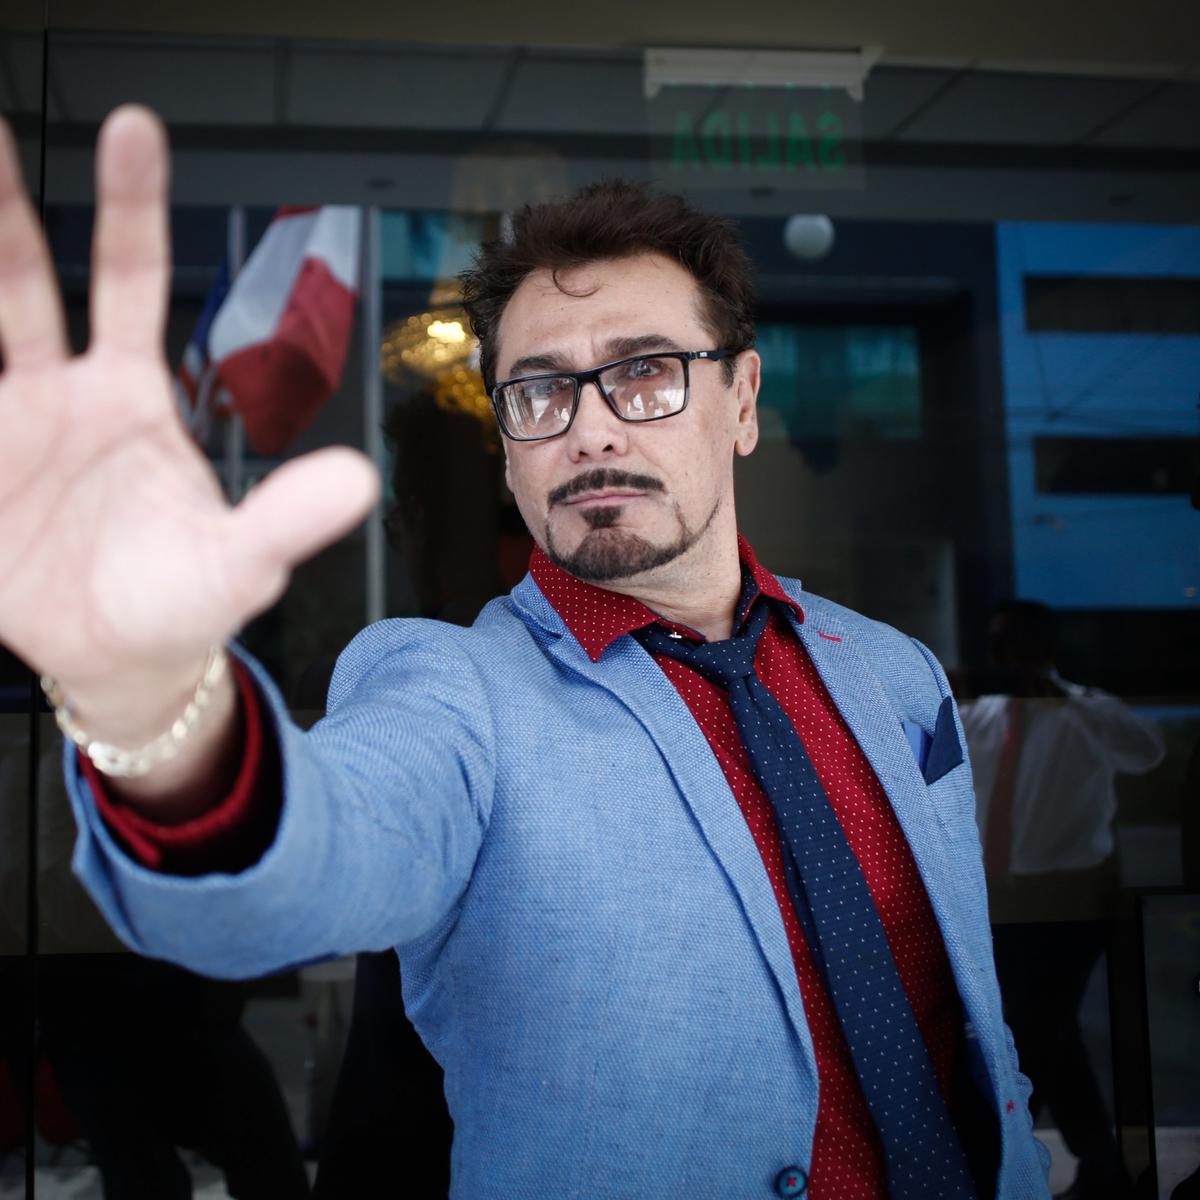 El cosplayer mexicano de Iron Man que apoya el control migratorio de Trump  | CULTURA | PERU21